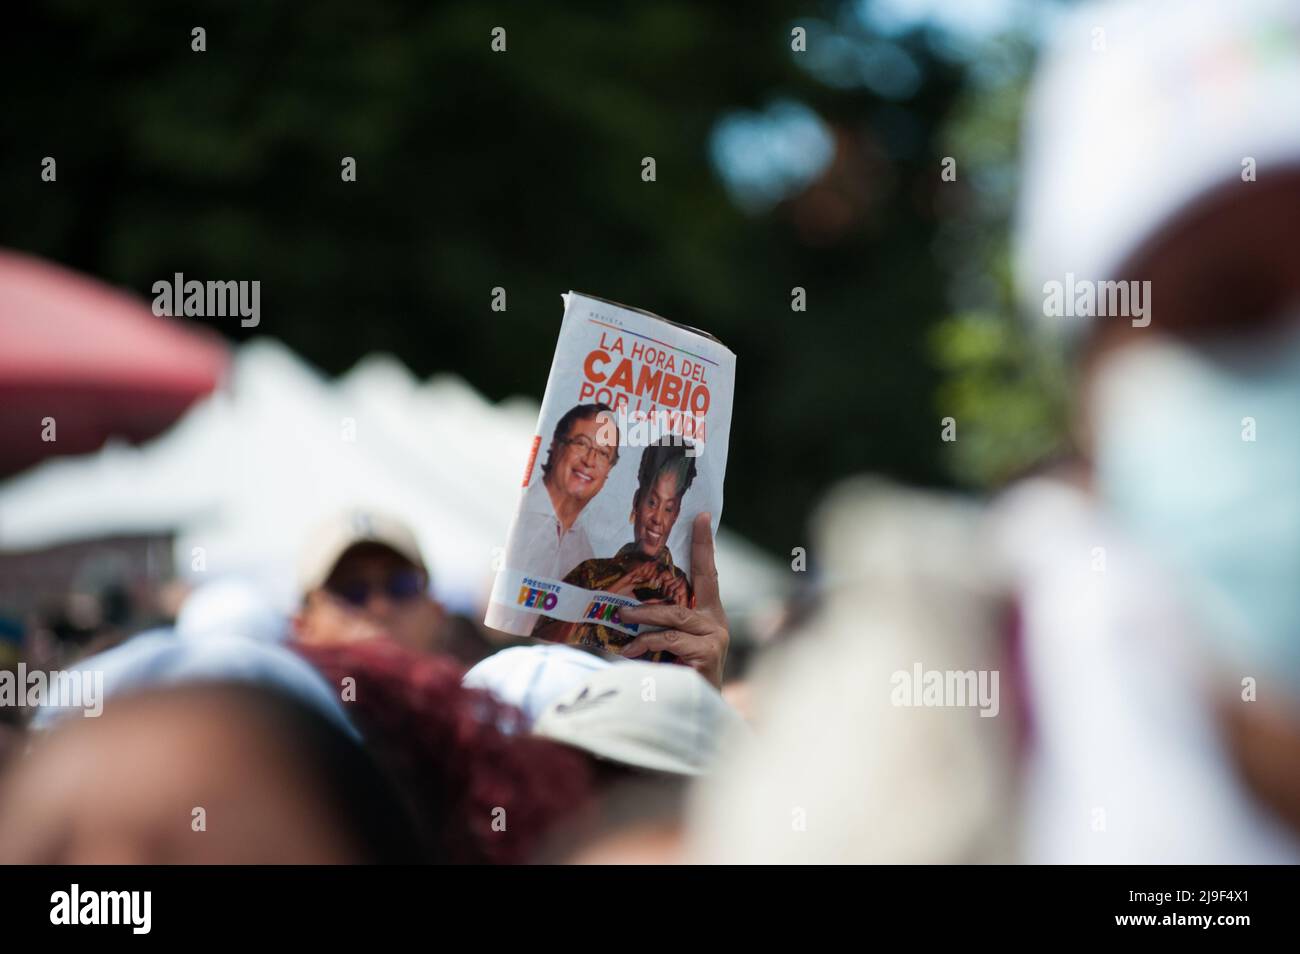 Anhänger der linken Vize-Präsidentschaftskandidatin für das politische  Bündnis „Pacto Historico“ Francia Marquez halten während ihrer Amtszeit  Banner und Schilder in der Hand Stockfotografie - Alamy